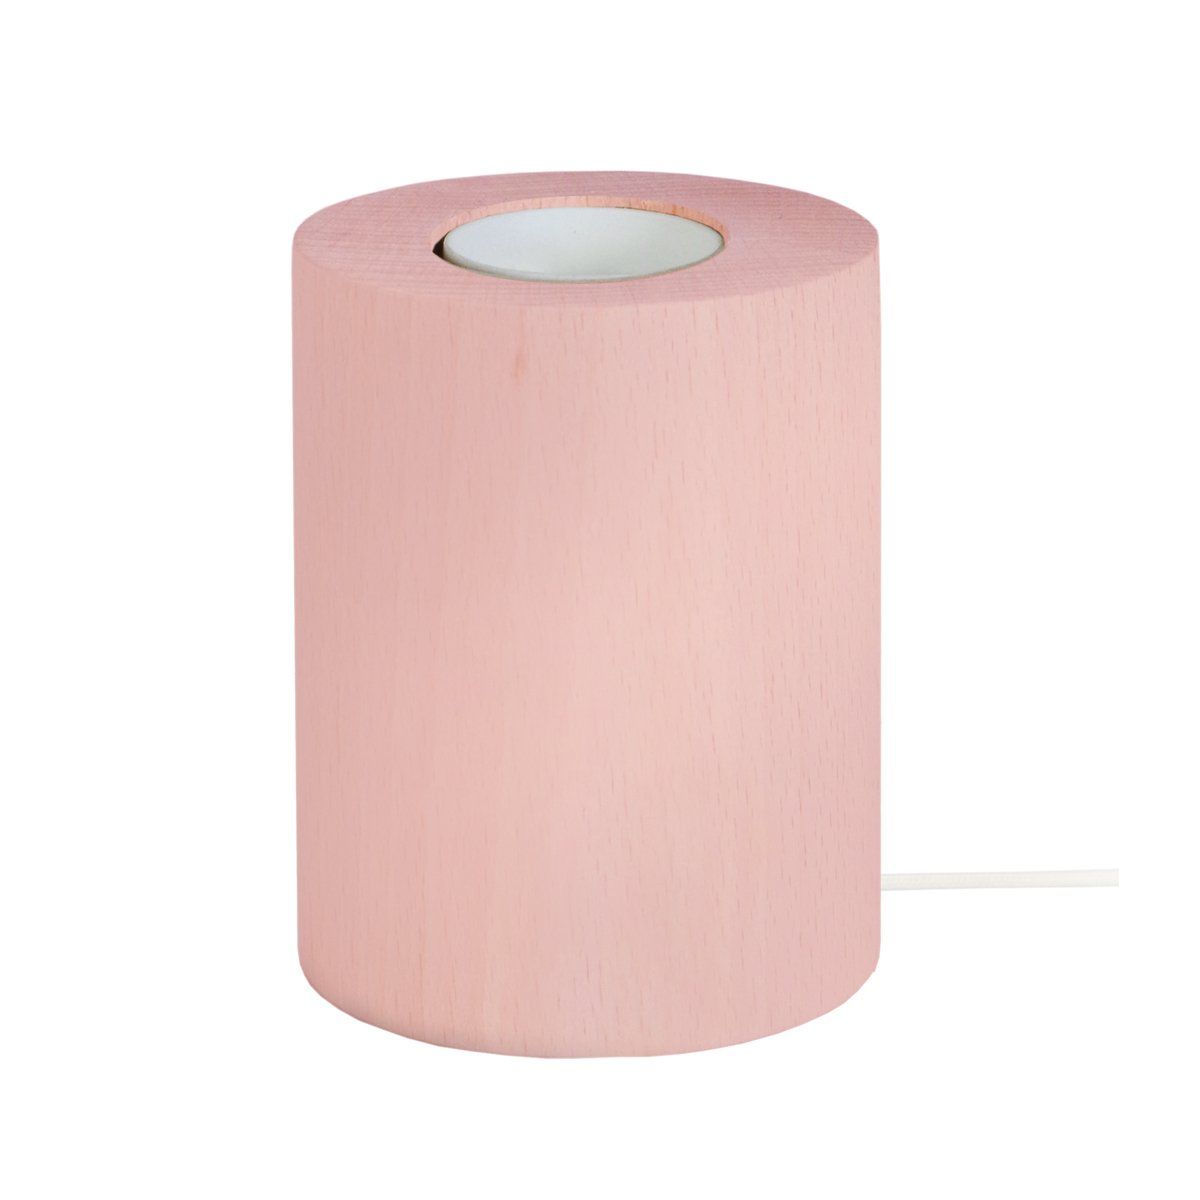 Pied de lampe ROLL (H8cm) en bois rose